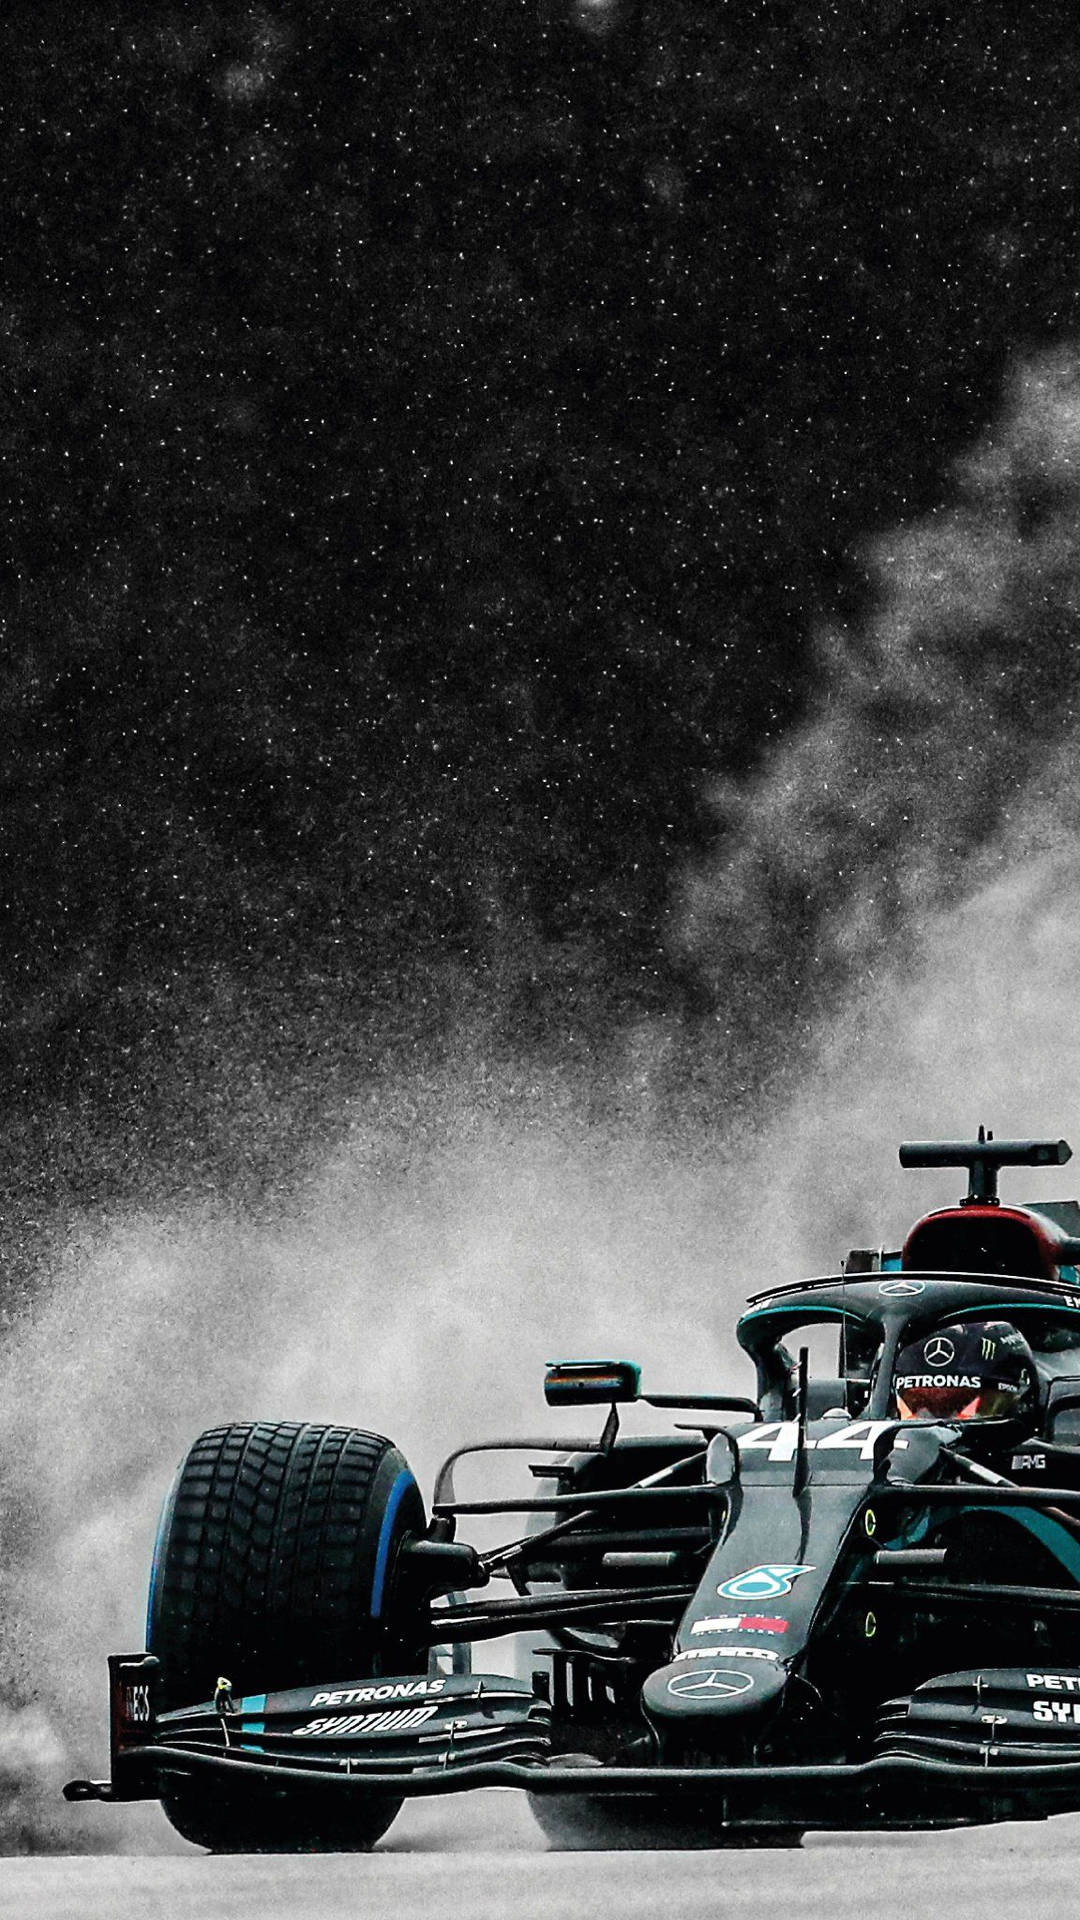  Formel 1 Hintergrundbild 1080x1920. F1 iPhone Wallpaper